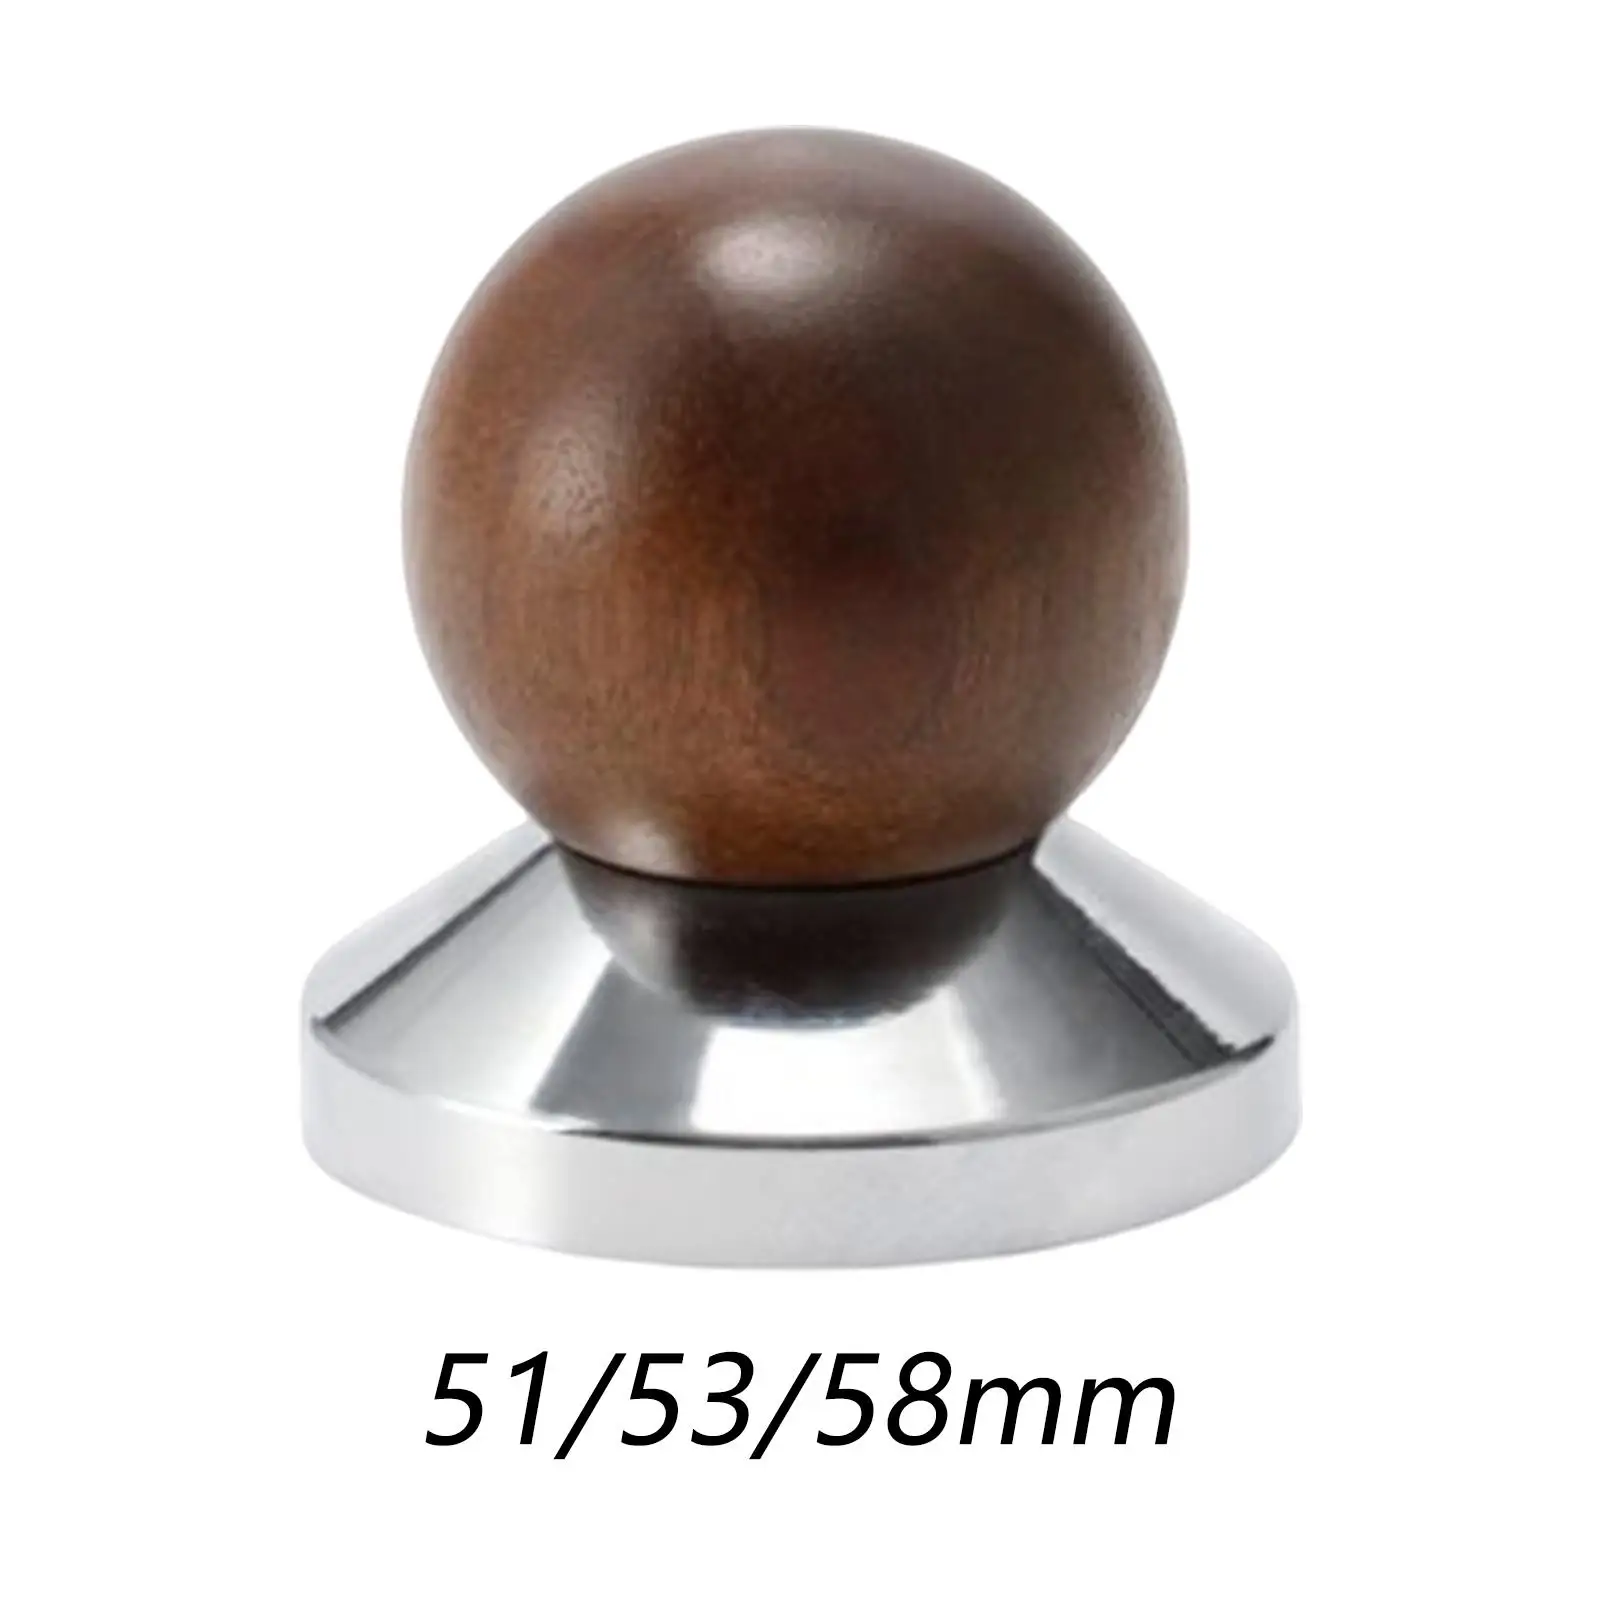 Professional Espresso Press Tamper Wooden Ergonomics Handle Flat Base Mini